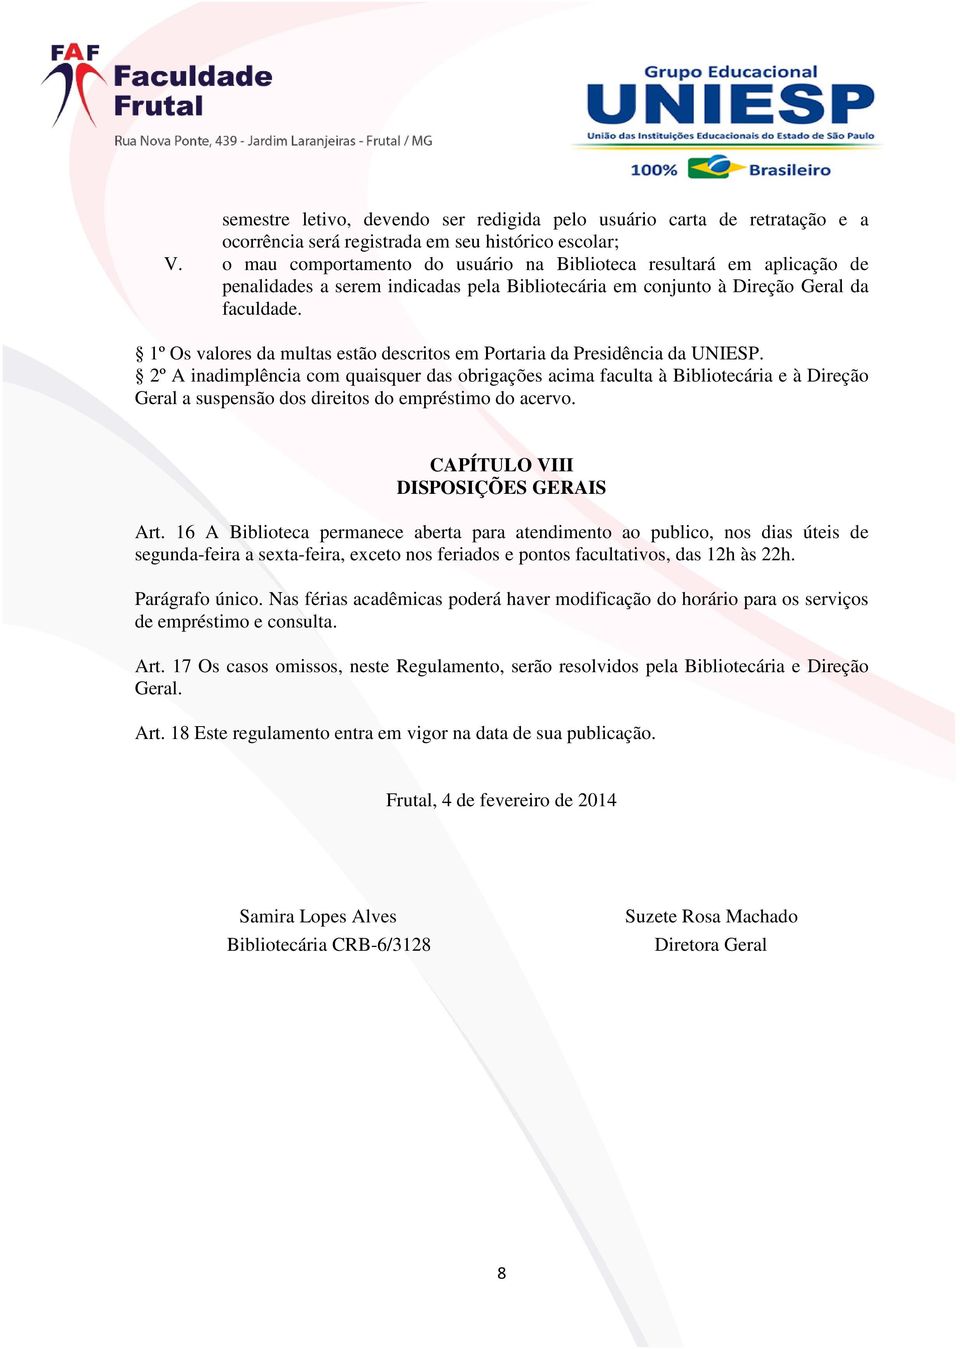 1º Os valores da multas estão descritos em Portaria da Presidência da UNIESP.